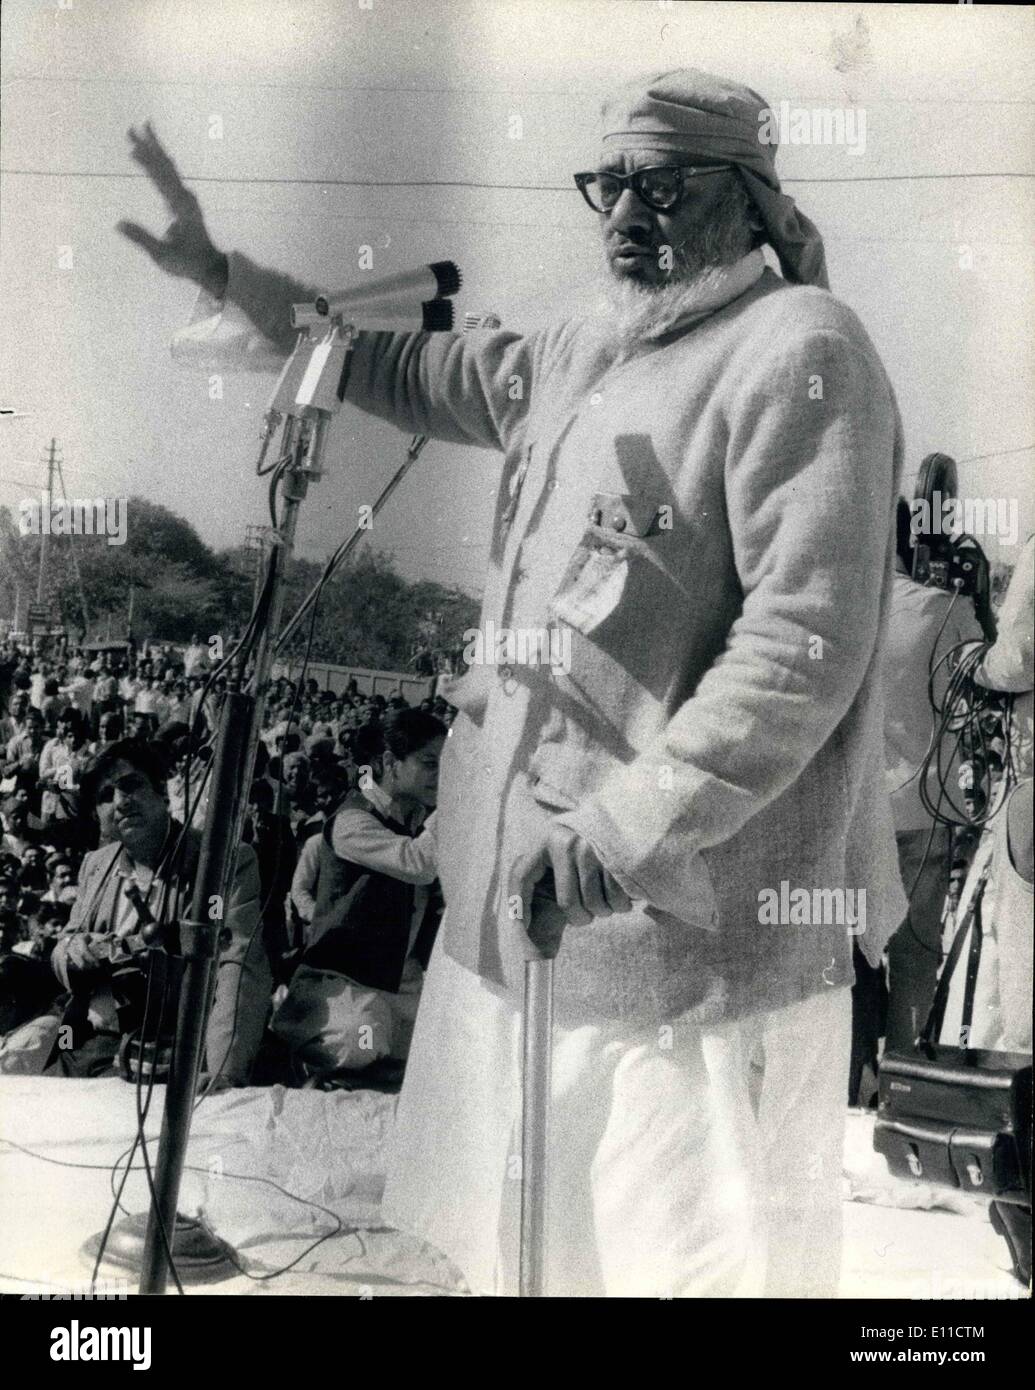 3. März 1977 - indischen Wahlen Rallye durch Herr RAJ MARAIN IN DELHI Foto zeigt: Die Janata Party tapferen Herr RAJ MARAIN gesehen Adressierung eine Großkundgebung in Neu-Delhi für die Wahlen in Indien in diesem Monat stattfindet. Stockfoto